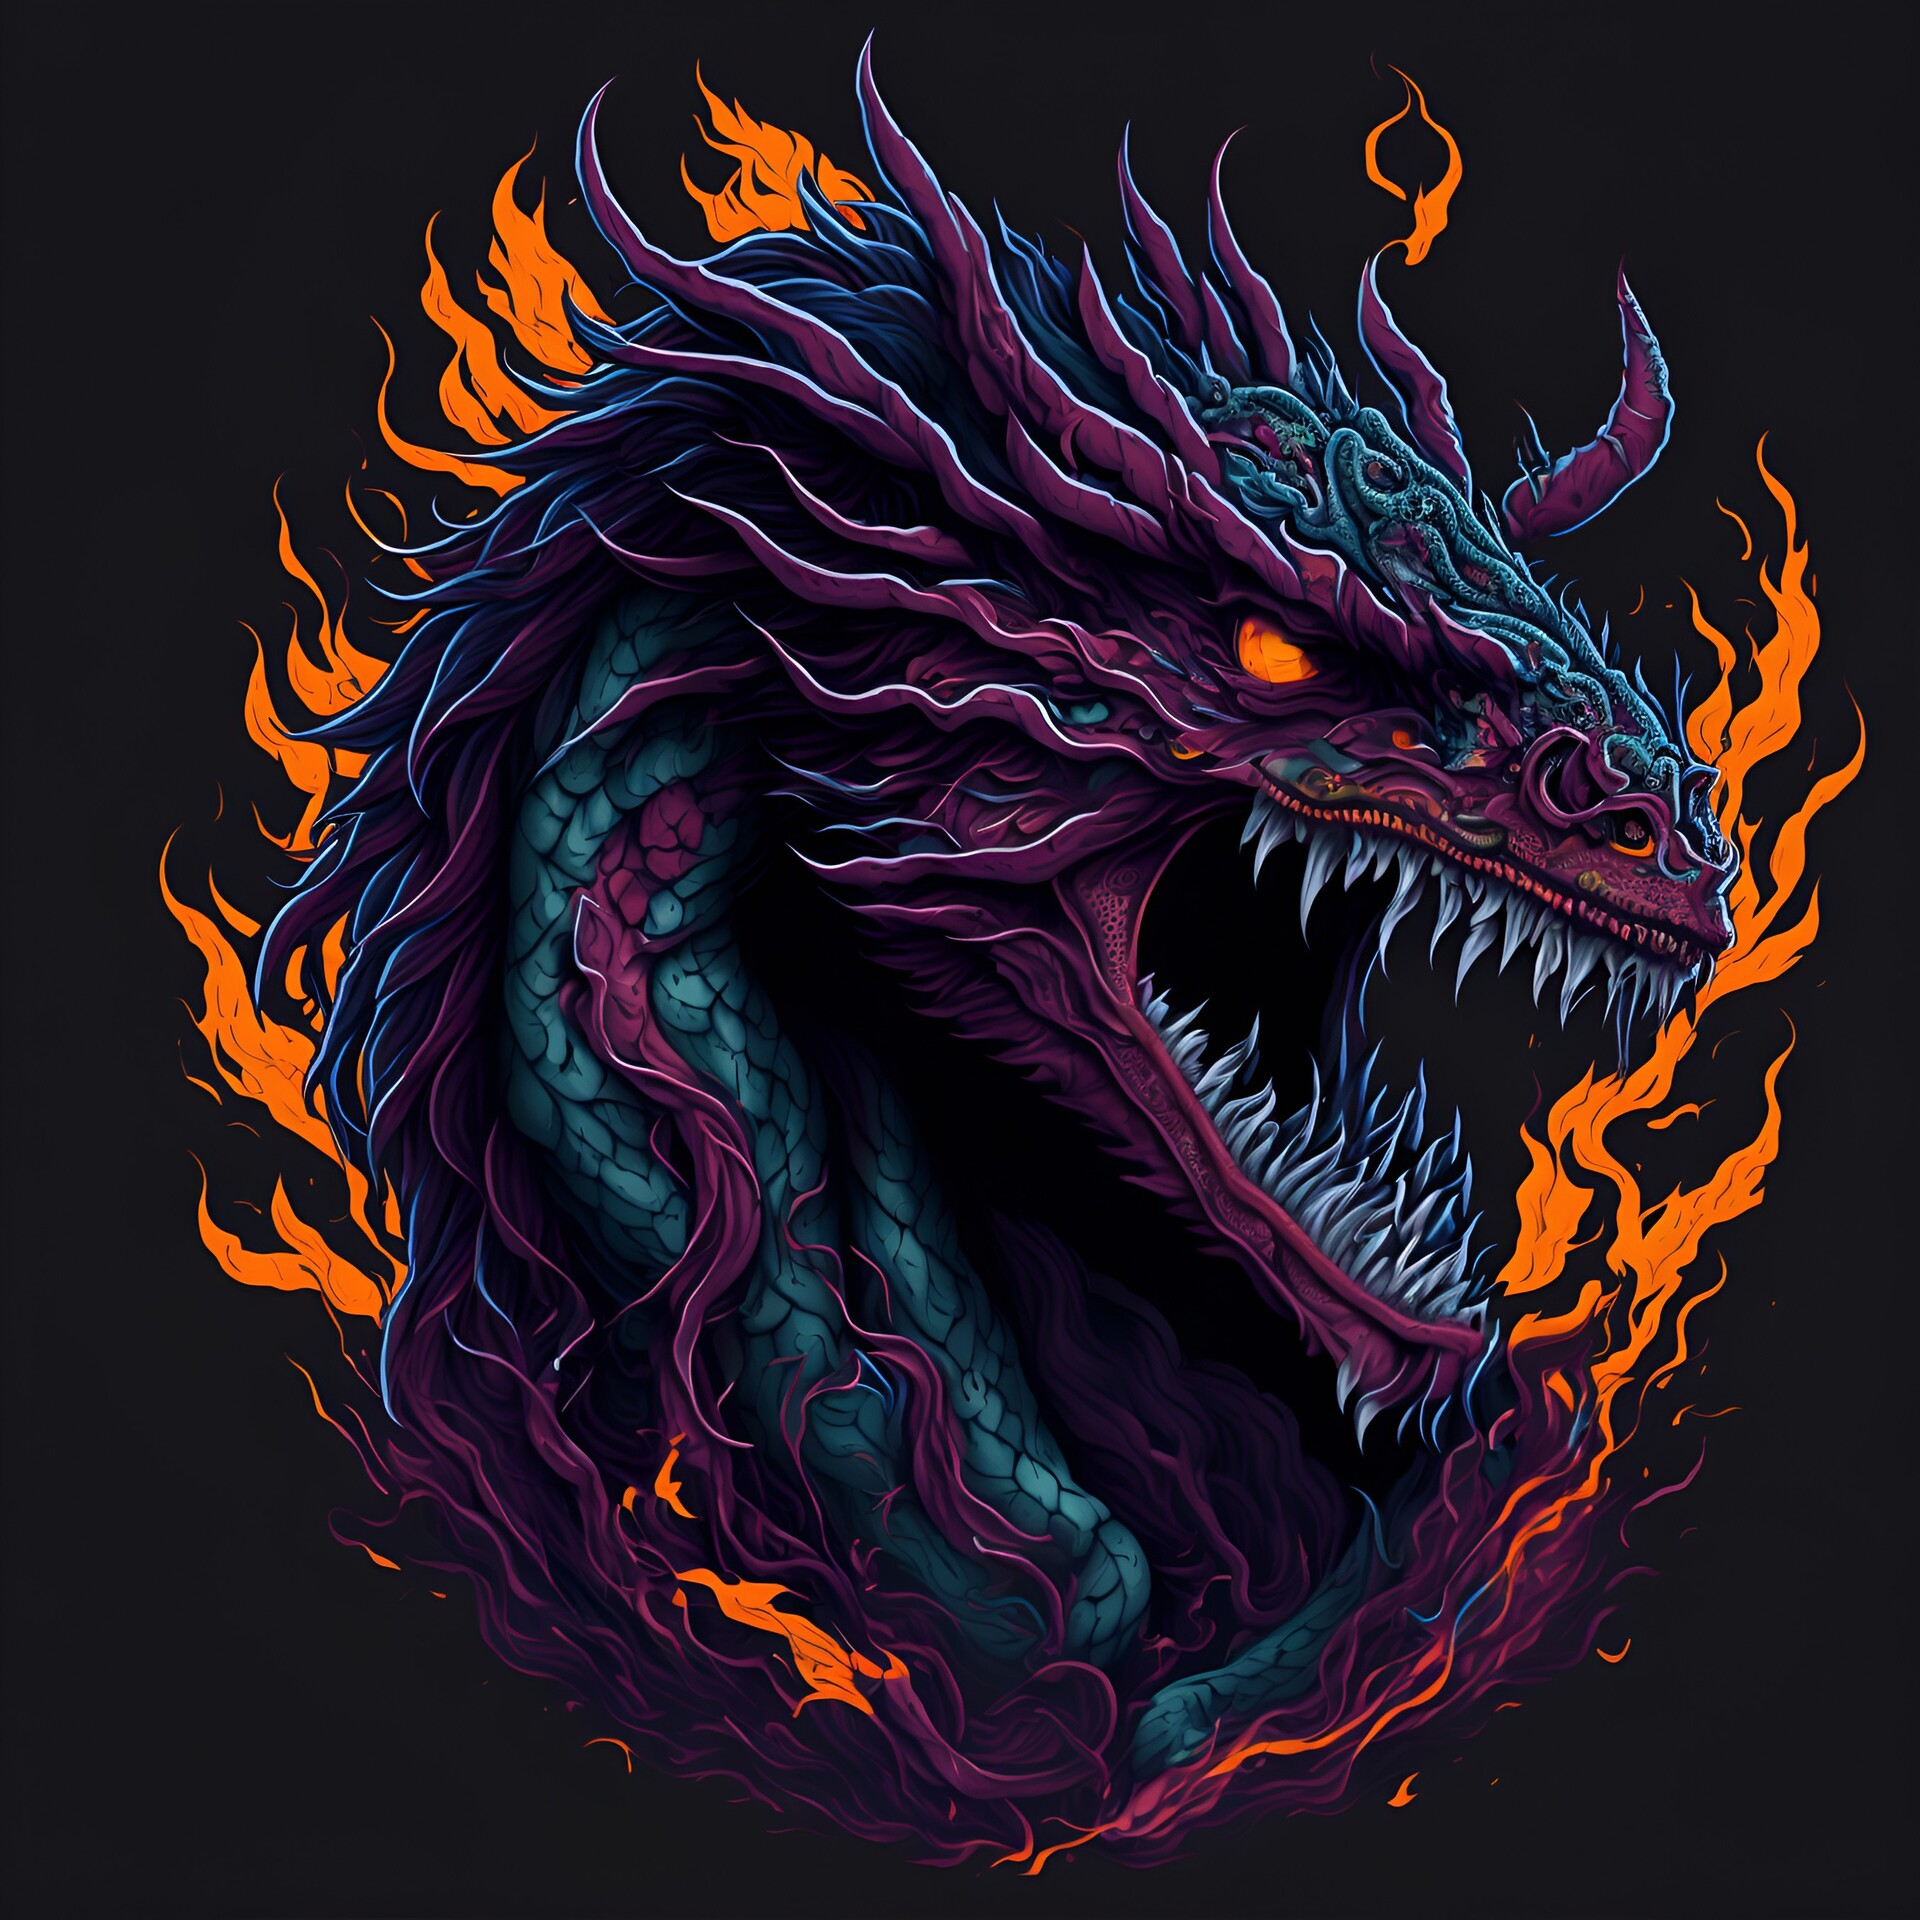 ArtStation - Dragon in fire